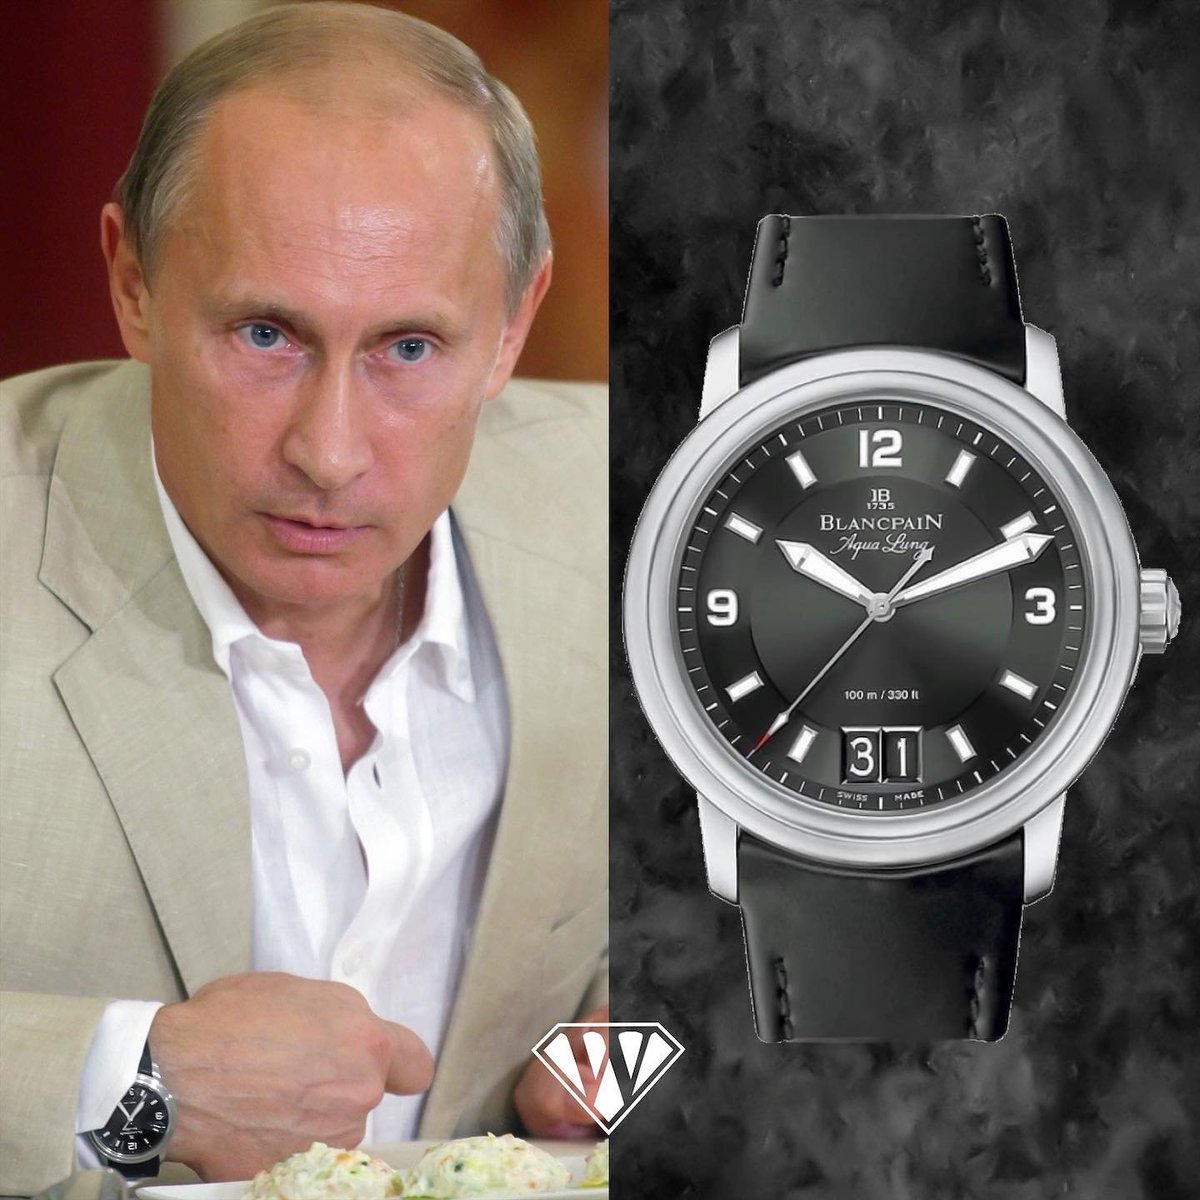 Лучший видеть часов. Часы Путина Blancpain Aqualung. Часы Путина Blancpain Leman. Blancpain Aqualung grande Date часы Путина.